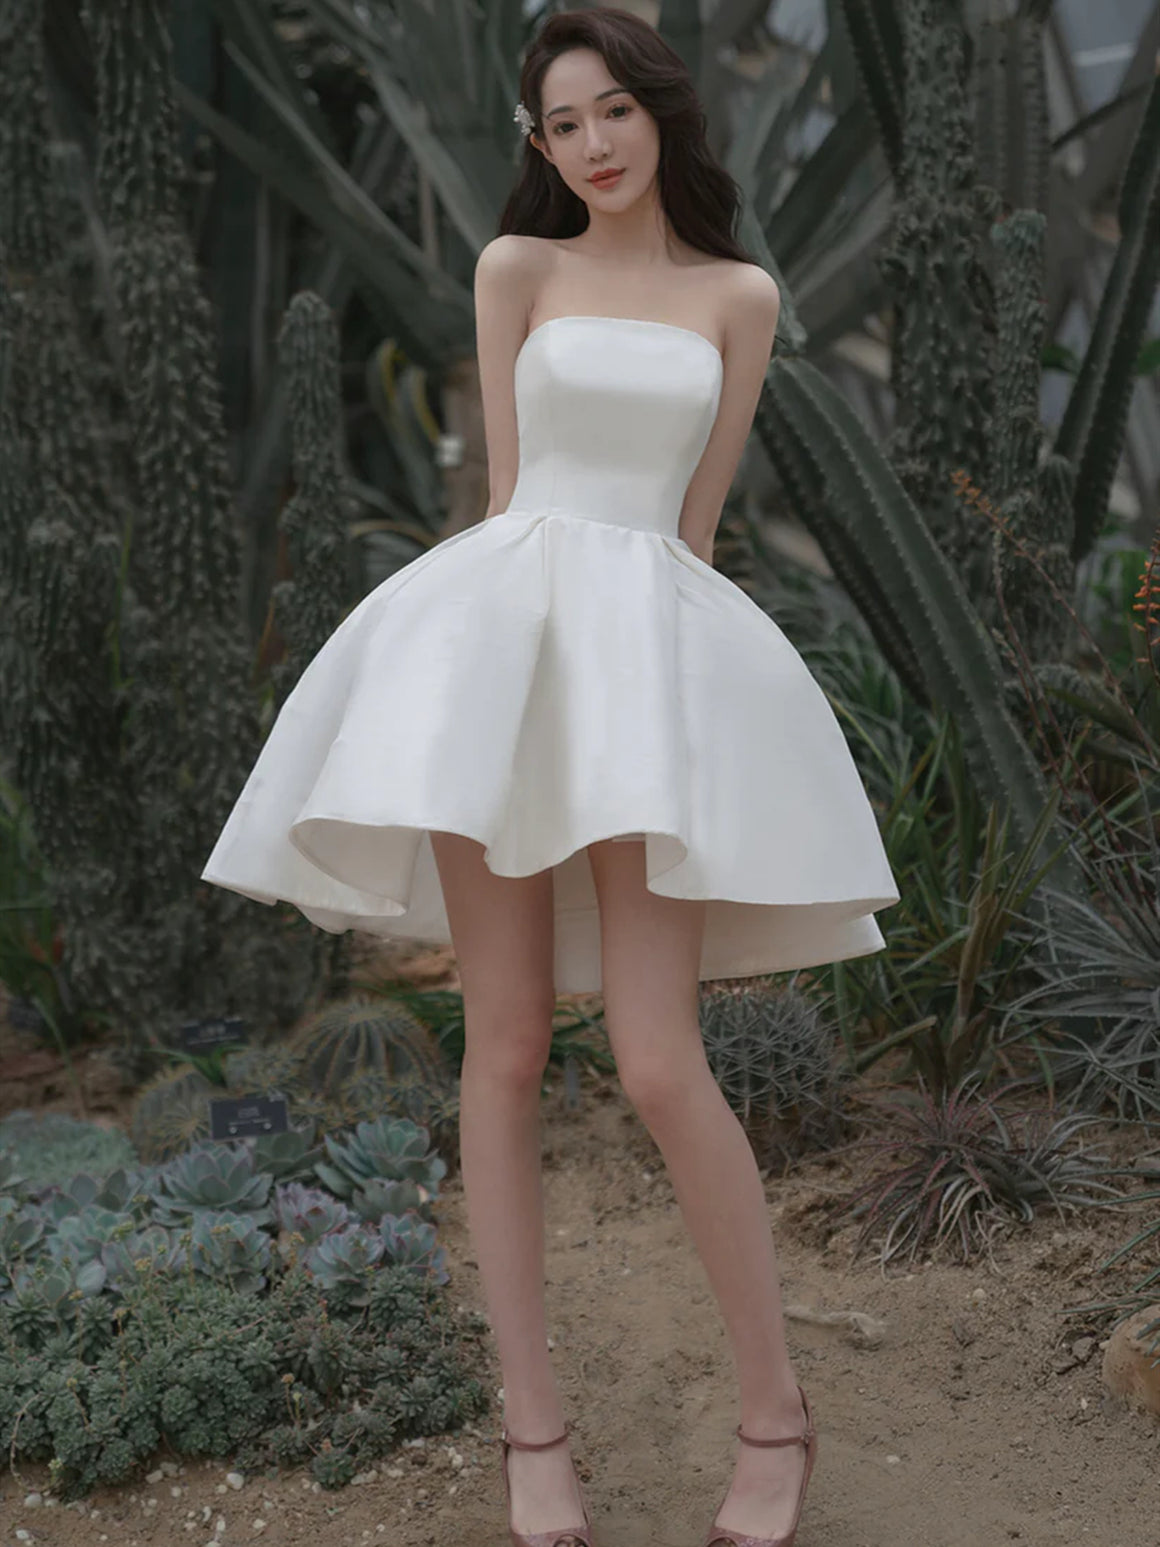 Strapless White Satin Prom Dresses, White Homecoming Dresses, Short Formal Evening Dresses